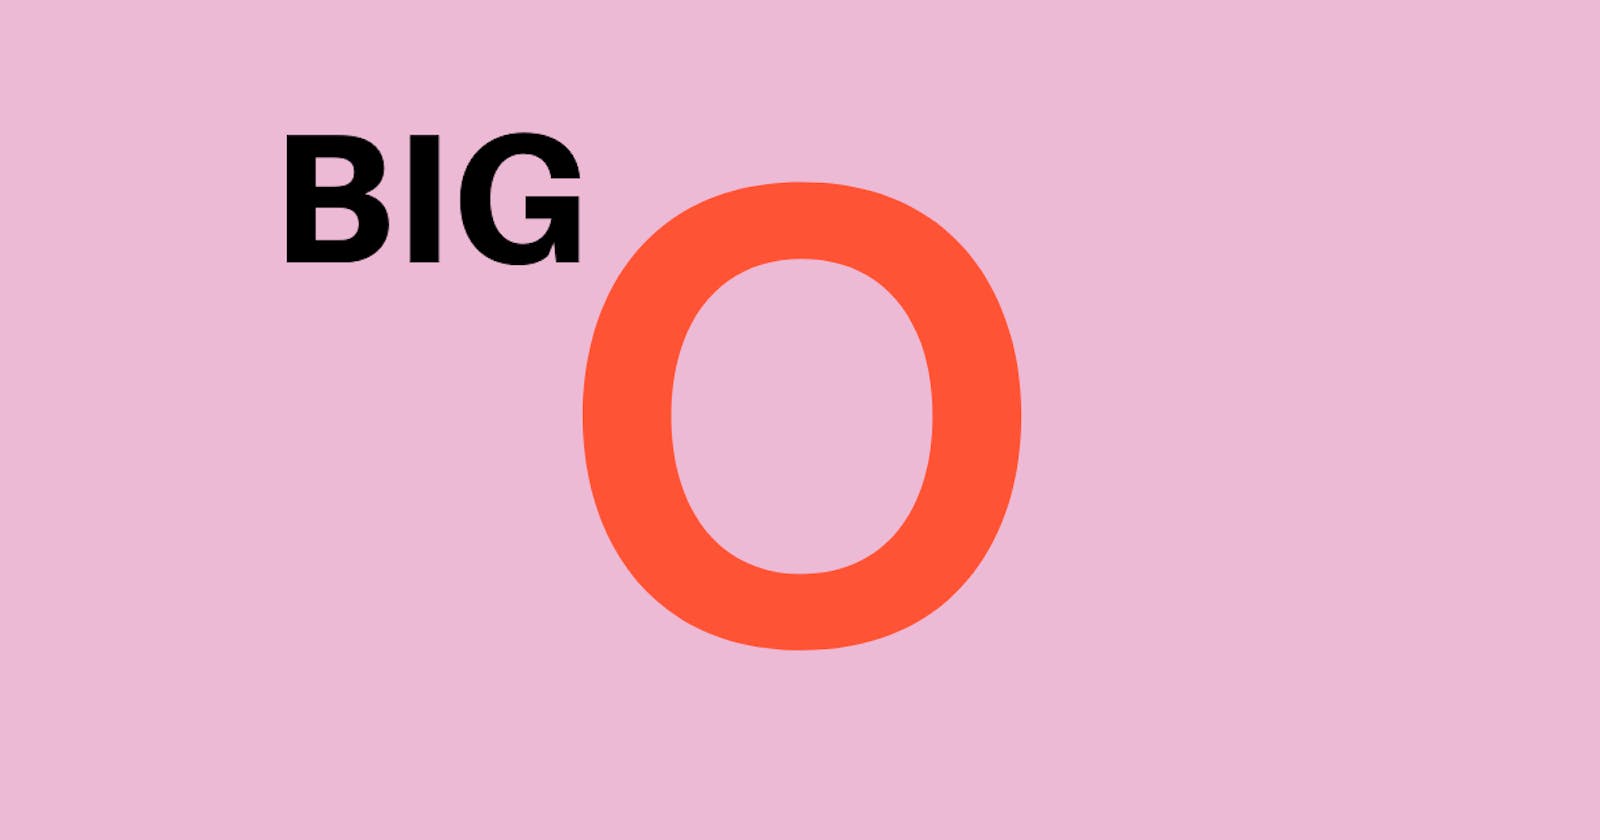 Big O Notation - Quick recap